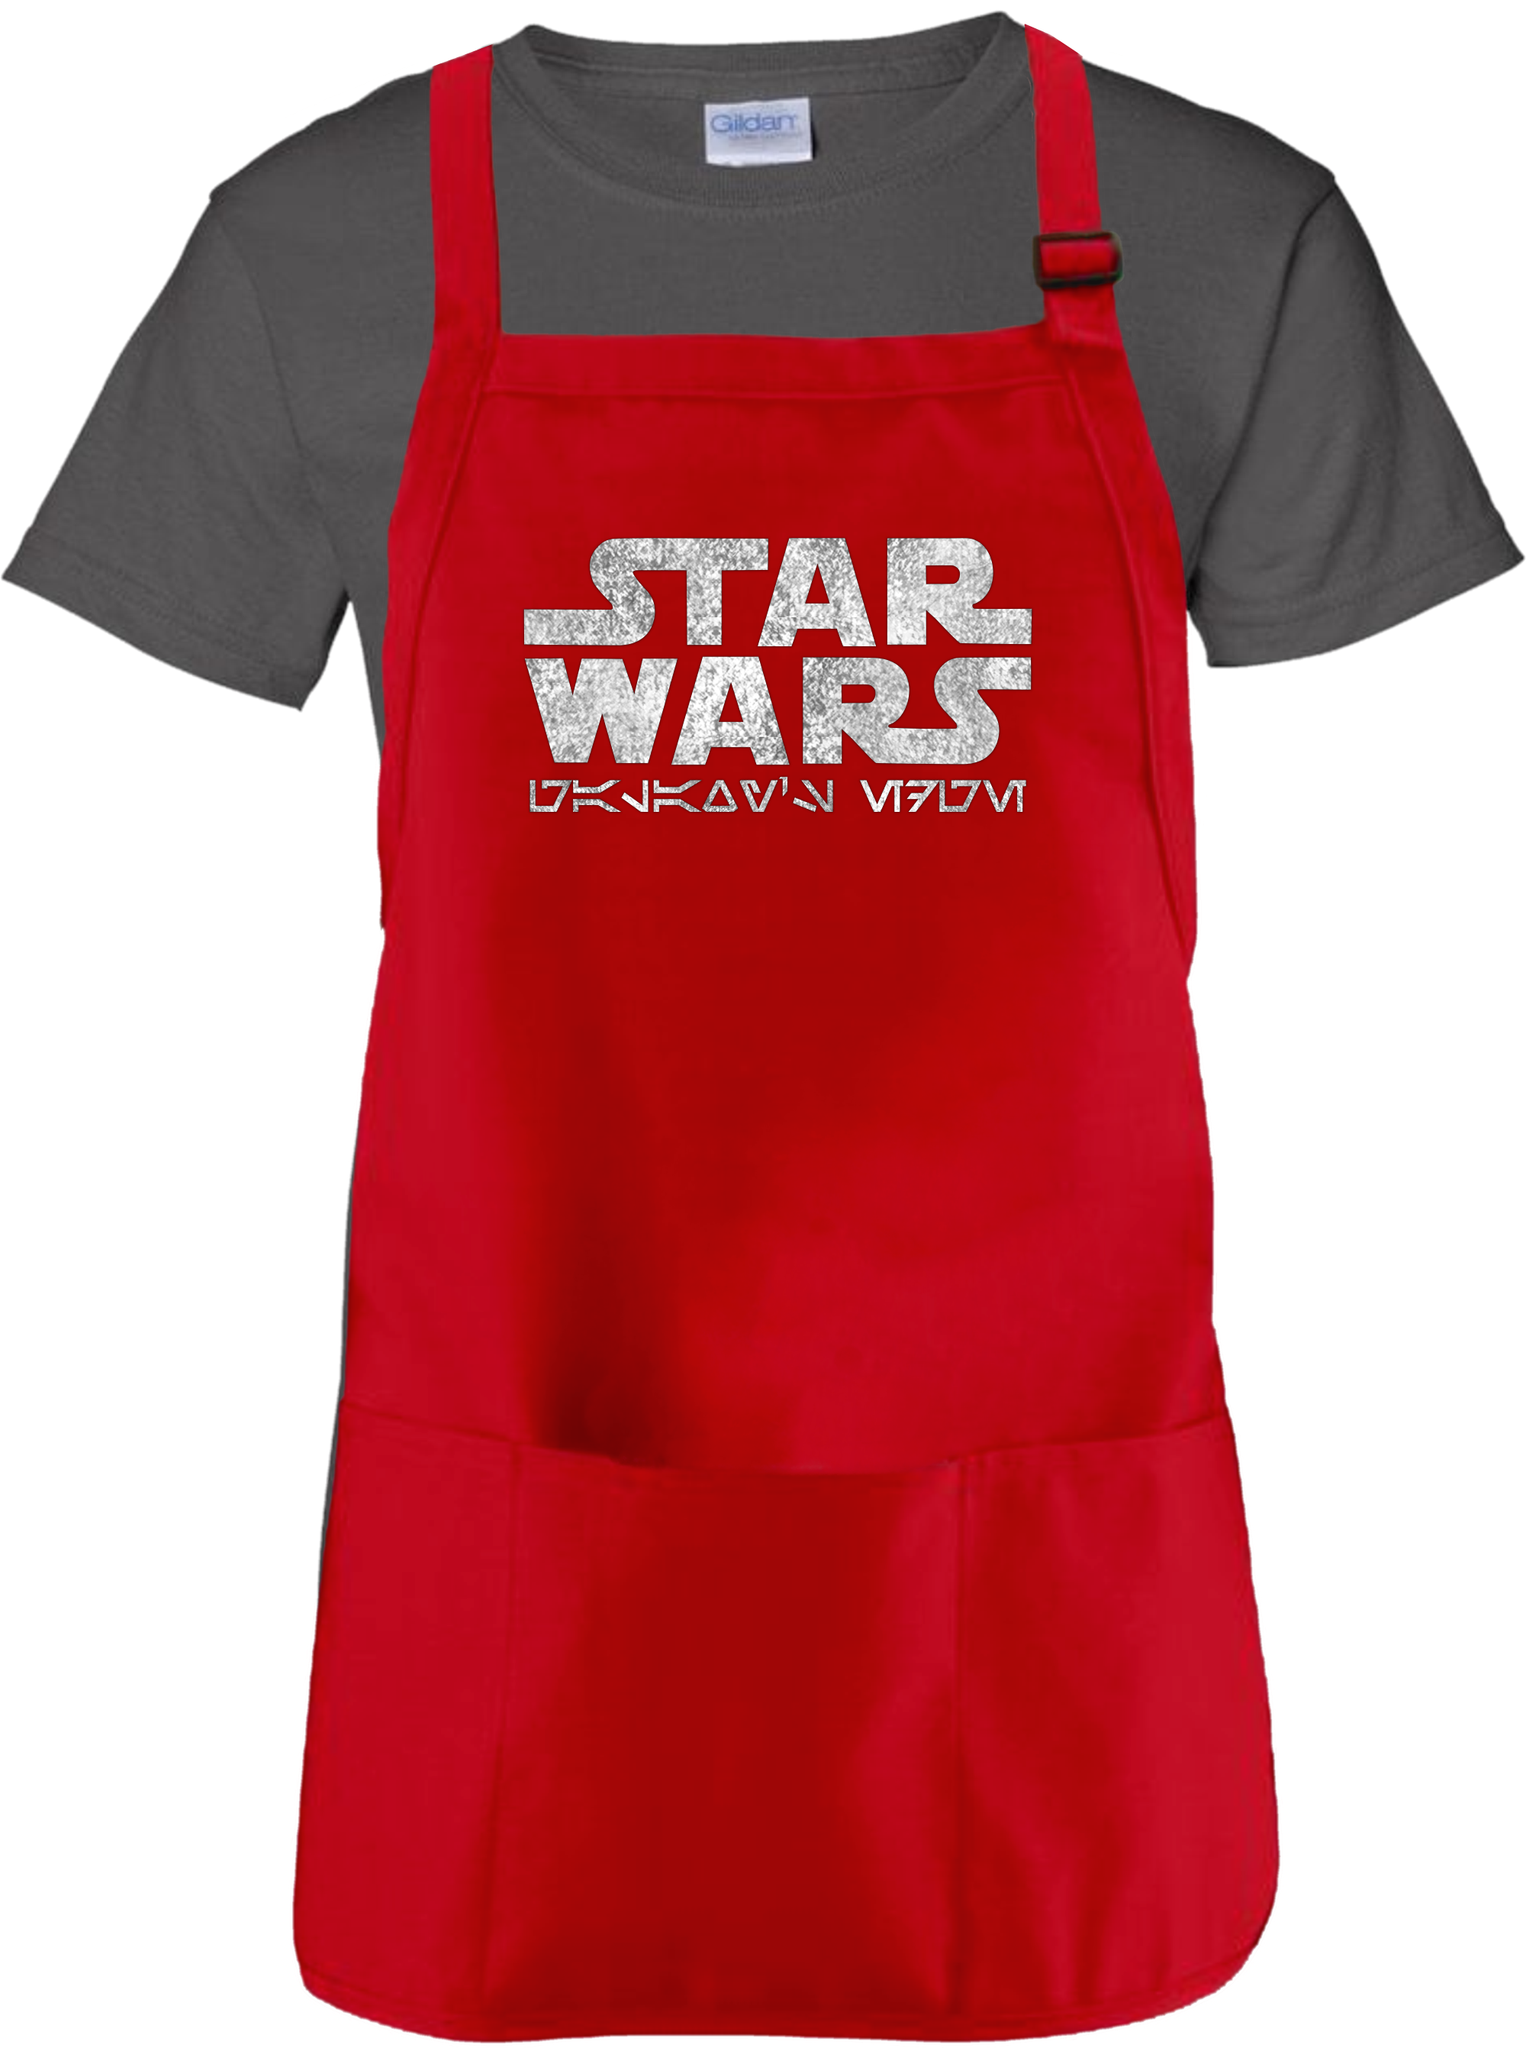 Tablier cuisine Star Wars, Kitchen textiles